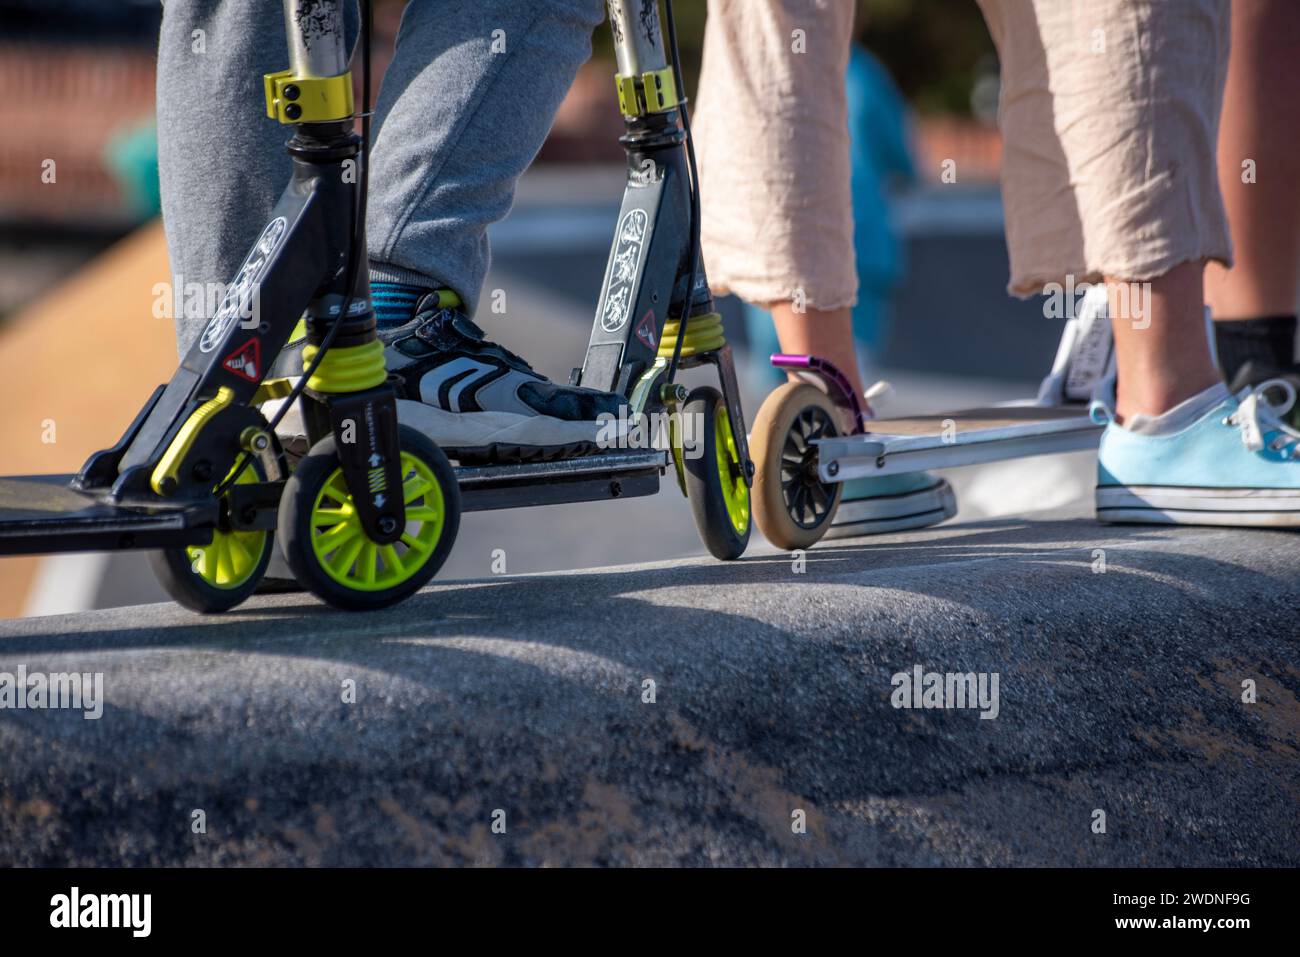 Anticipazione della pista: Piedi e scooter allineati, pronti per un giro dinamico in una coda elettrizzante Foto Stock